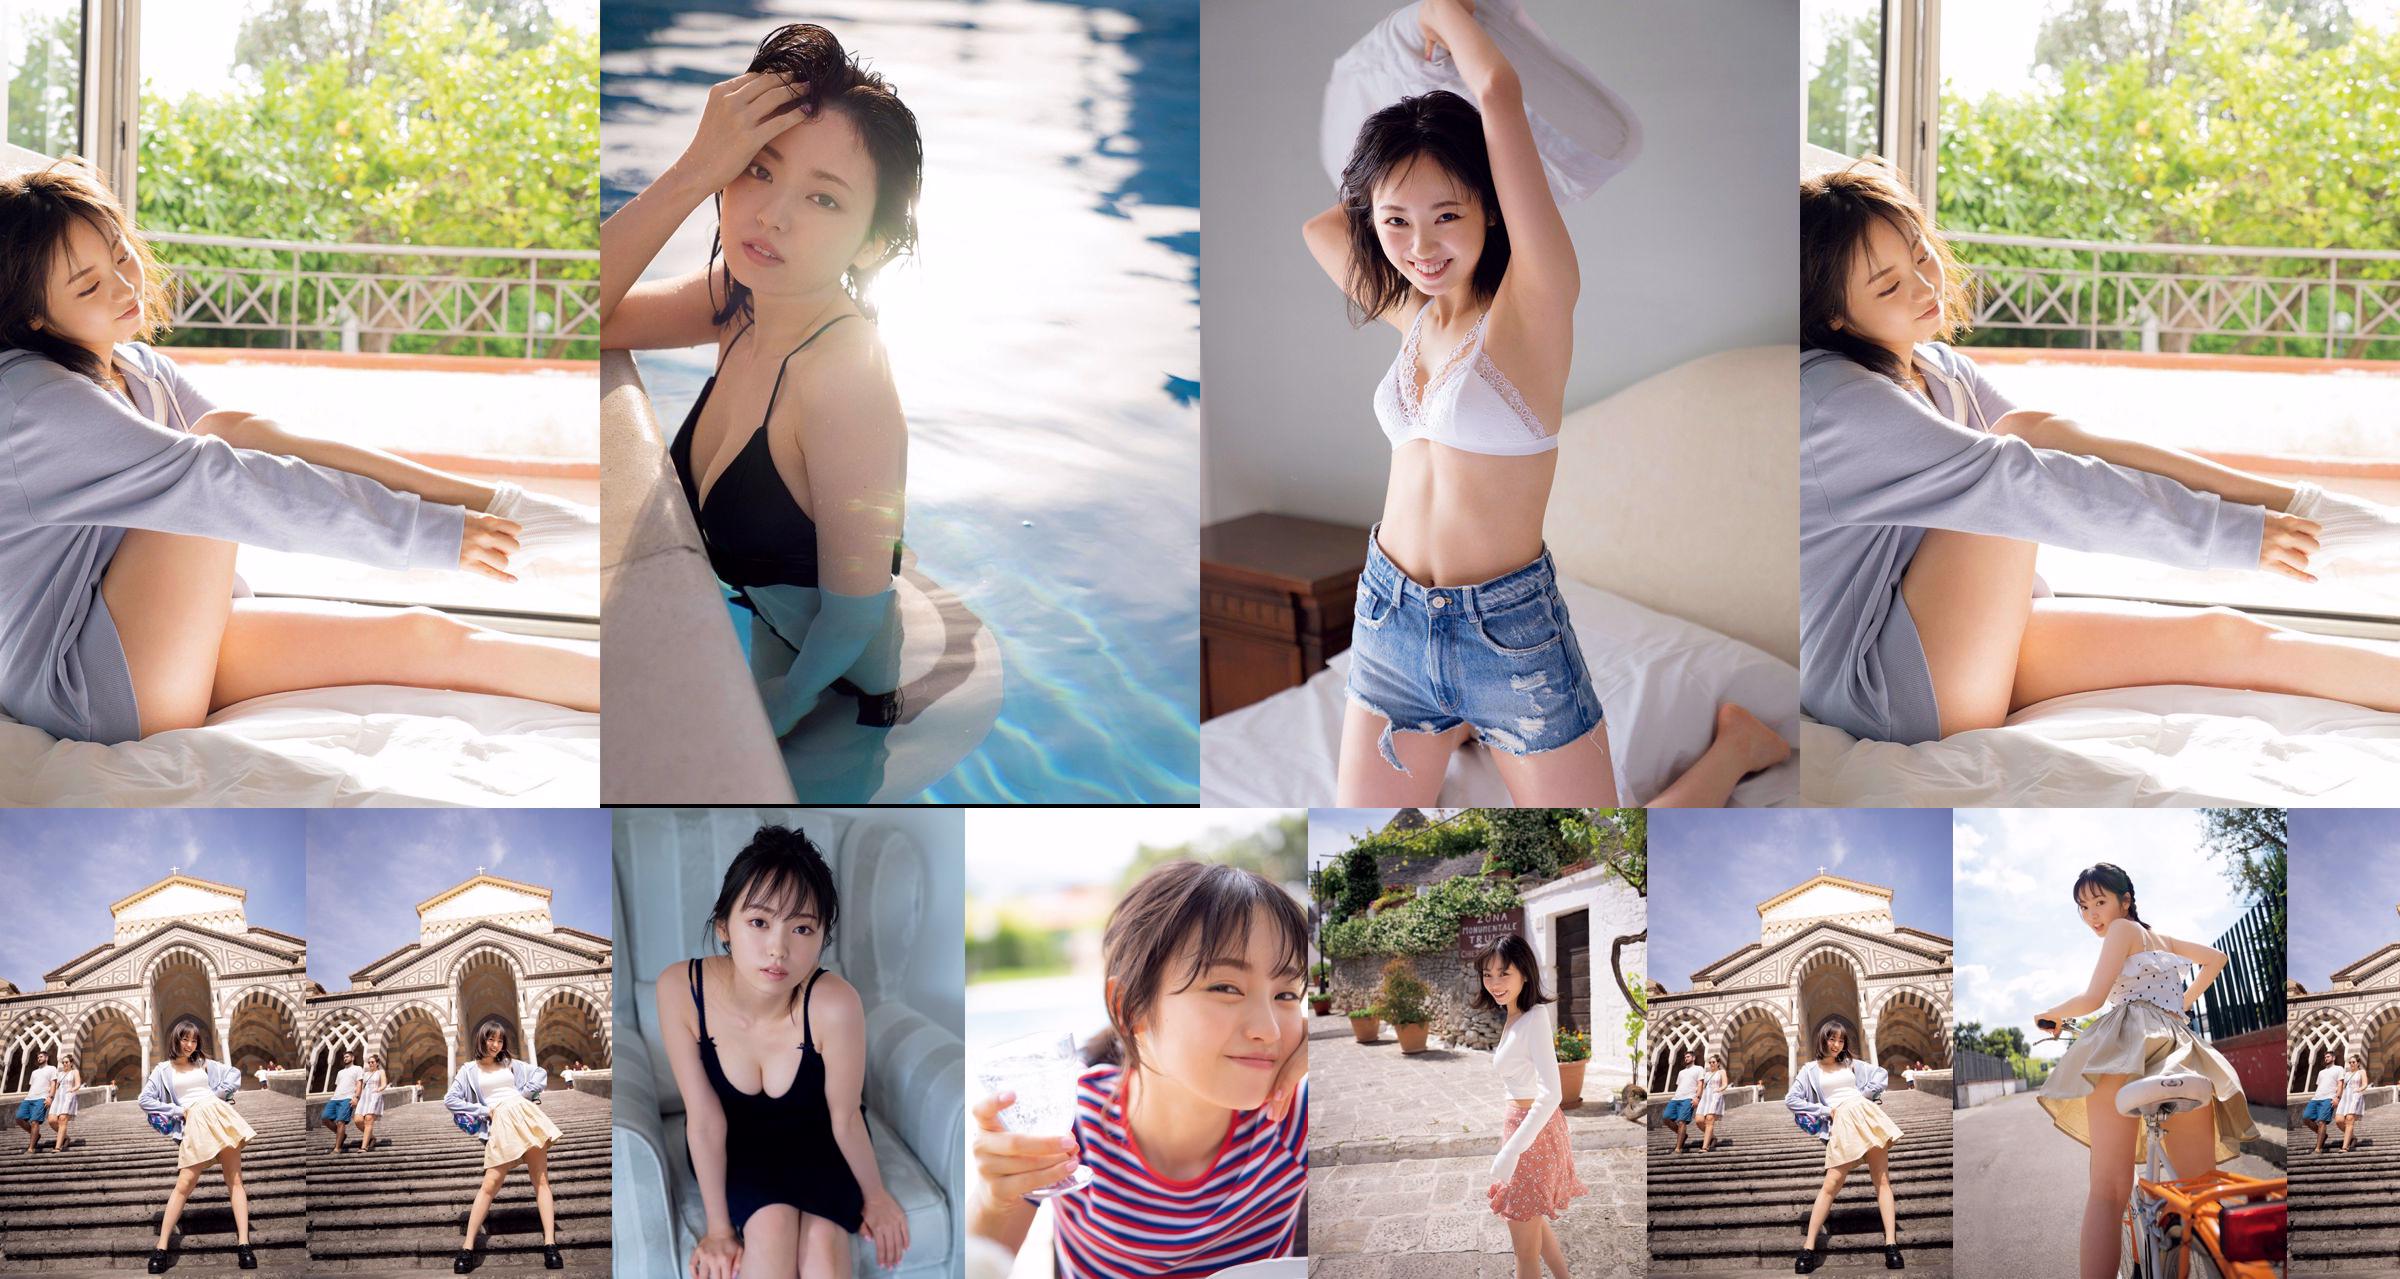 [SEXTA-FEIRA] Keyakizaka46, Yui Imaizumi "Traje de banho e lingerie da" Primeira e última! "" Foto No.78a521 Página 4